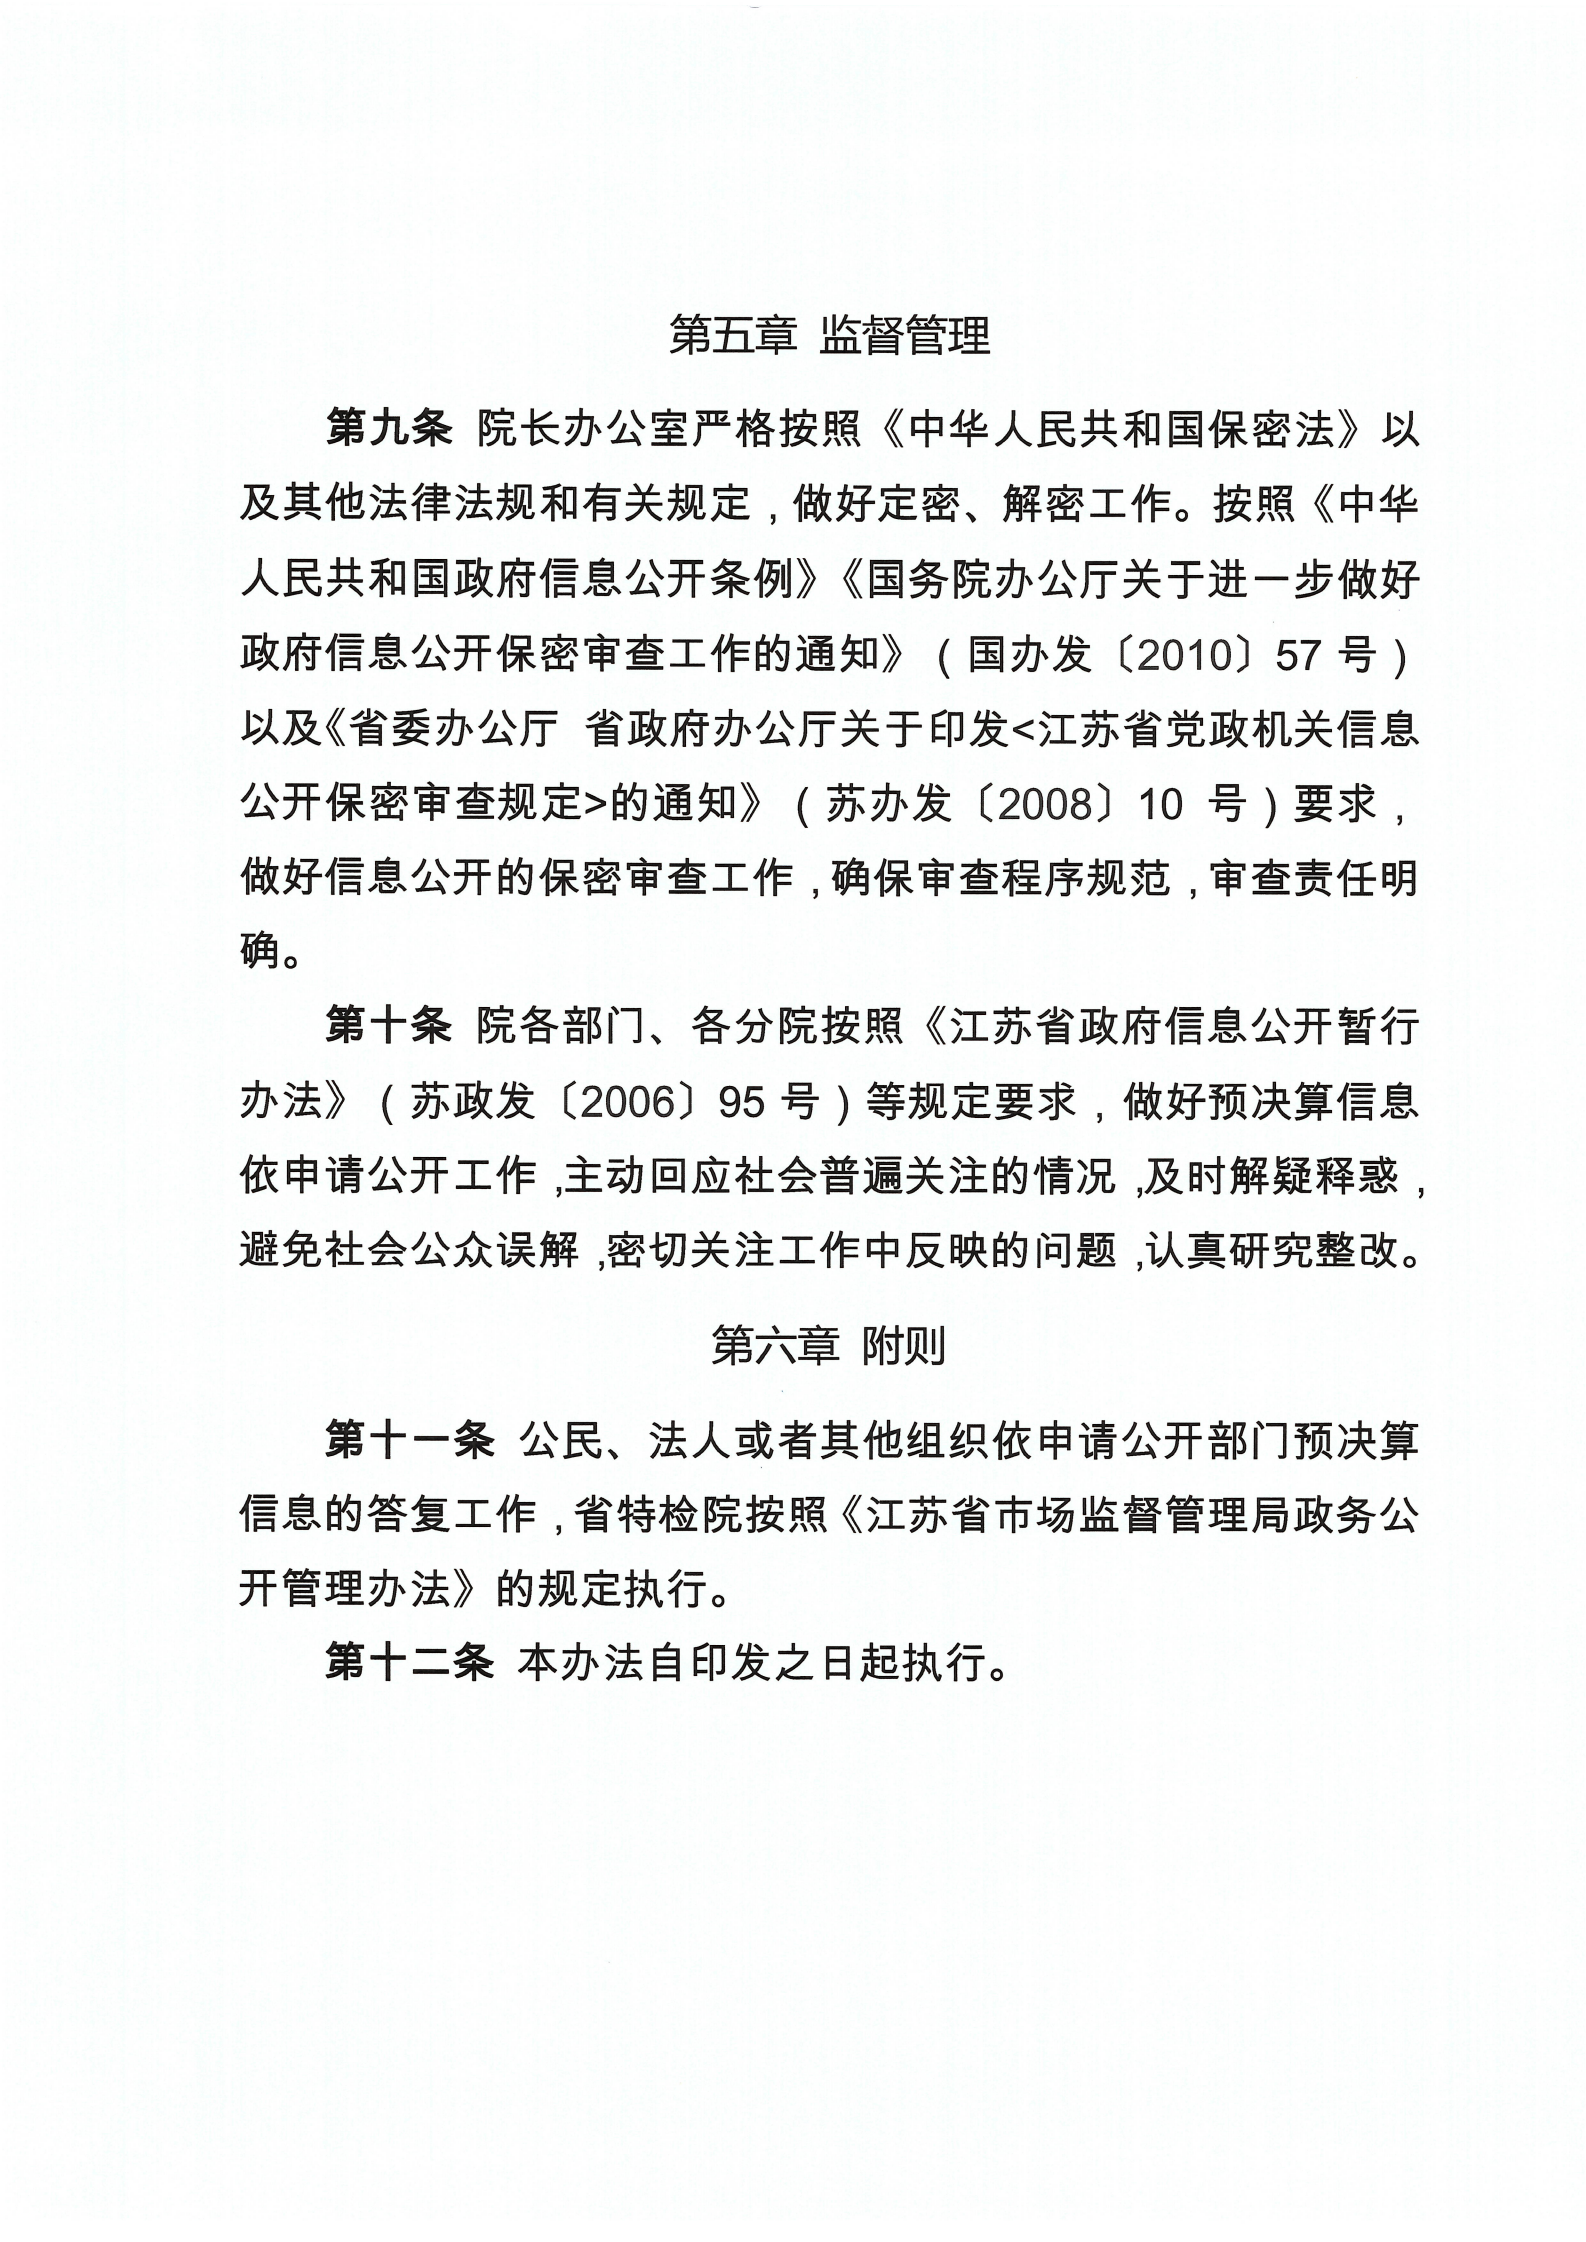 江苏省特种设备安全监督检验研究院部门预决算信息公开管理暂行办法_05.png